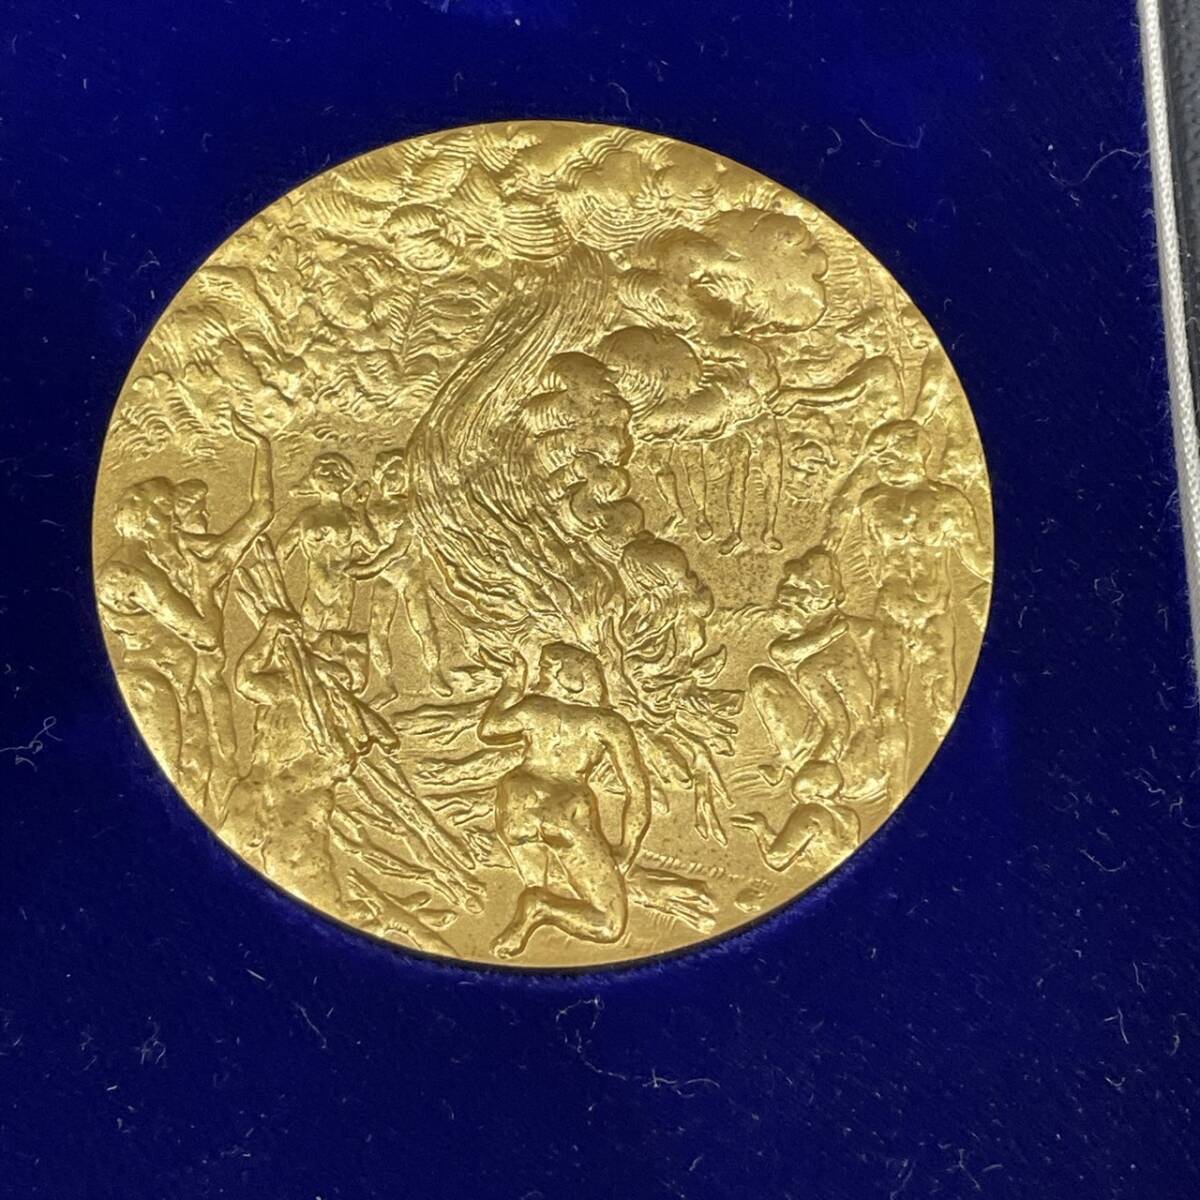 【TOA-5539】 1  йен ～  воспоминание   медаль   продажа    олимпийский    Япония 10000... EXPO  монетный двор    монета   золото    серебро   медь   воспоминание    коллекция   текущее состояние   хранение товара 